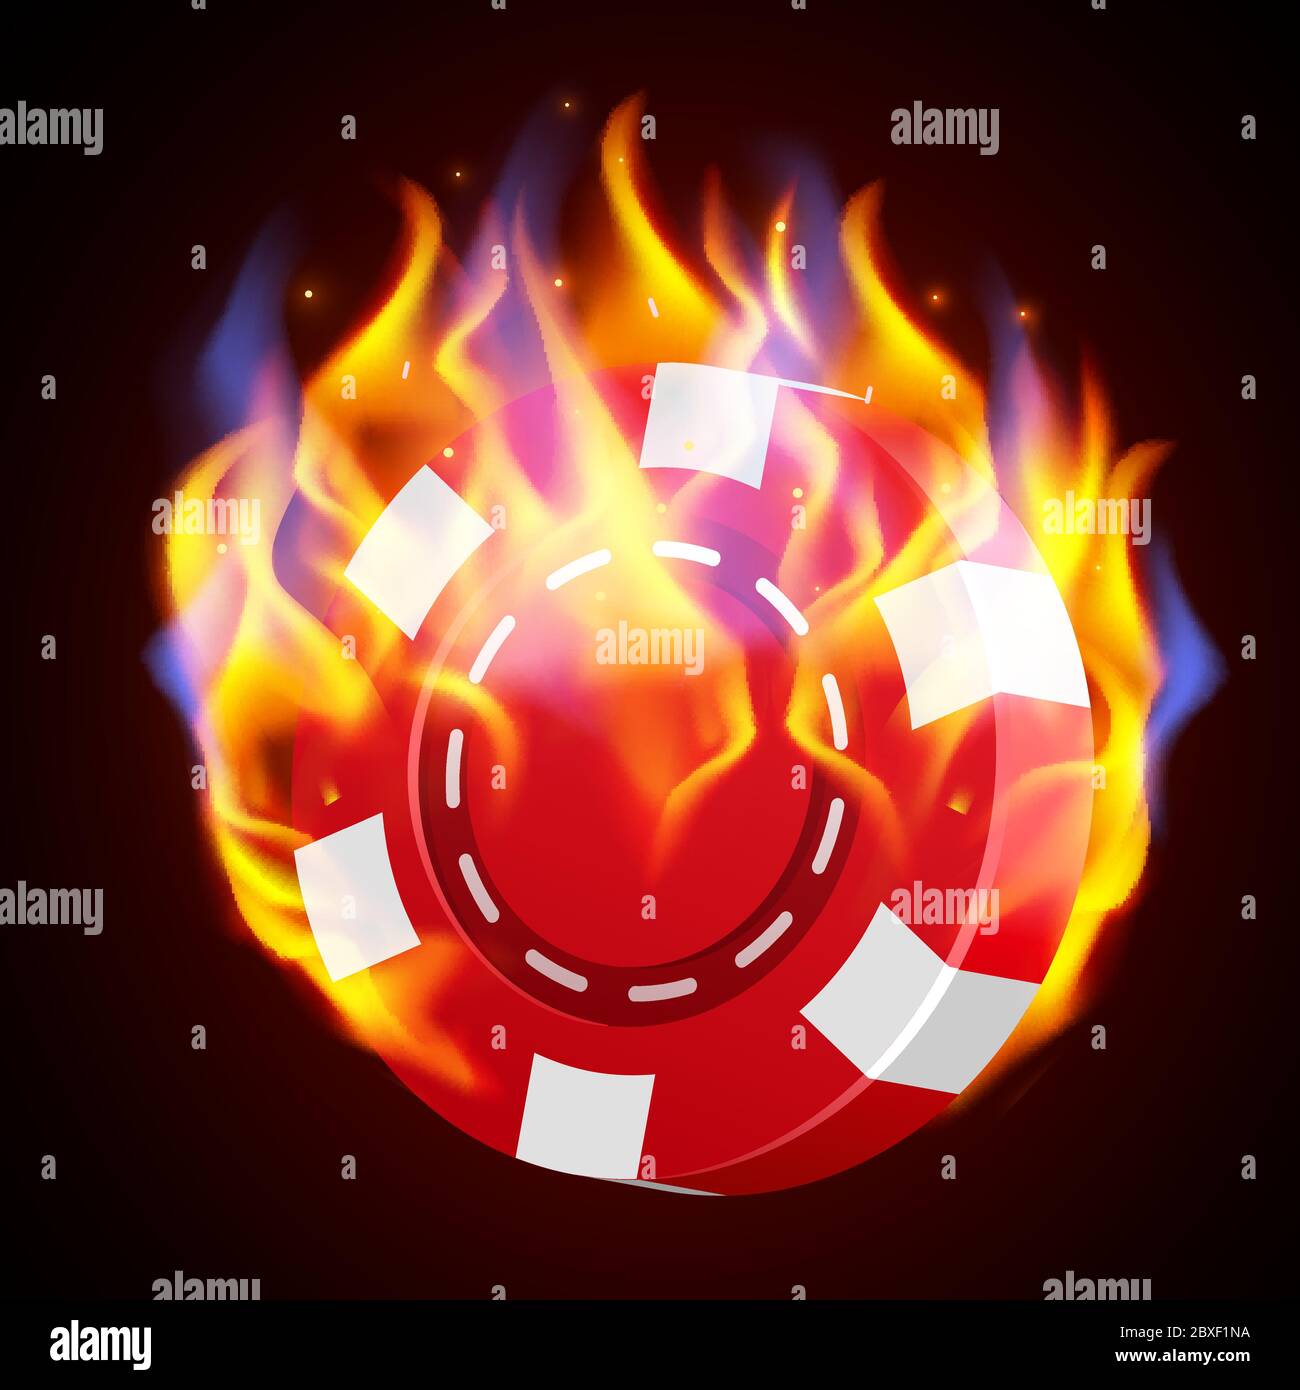 Burning casino chip. Hot casino concept. Fire poker. Vector illustration Stock Vector